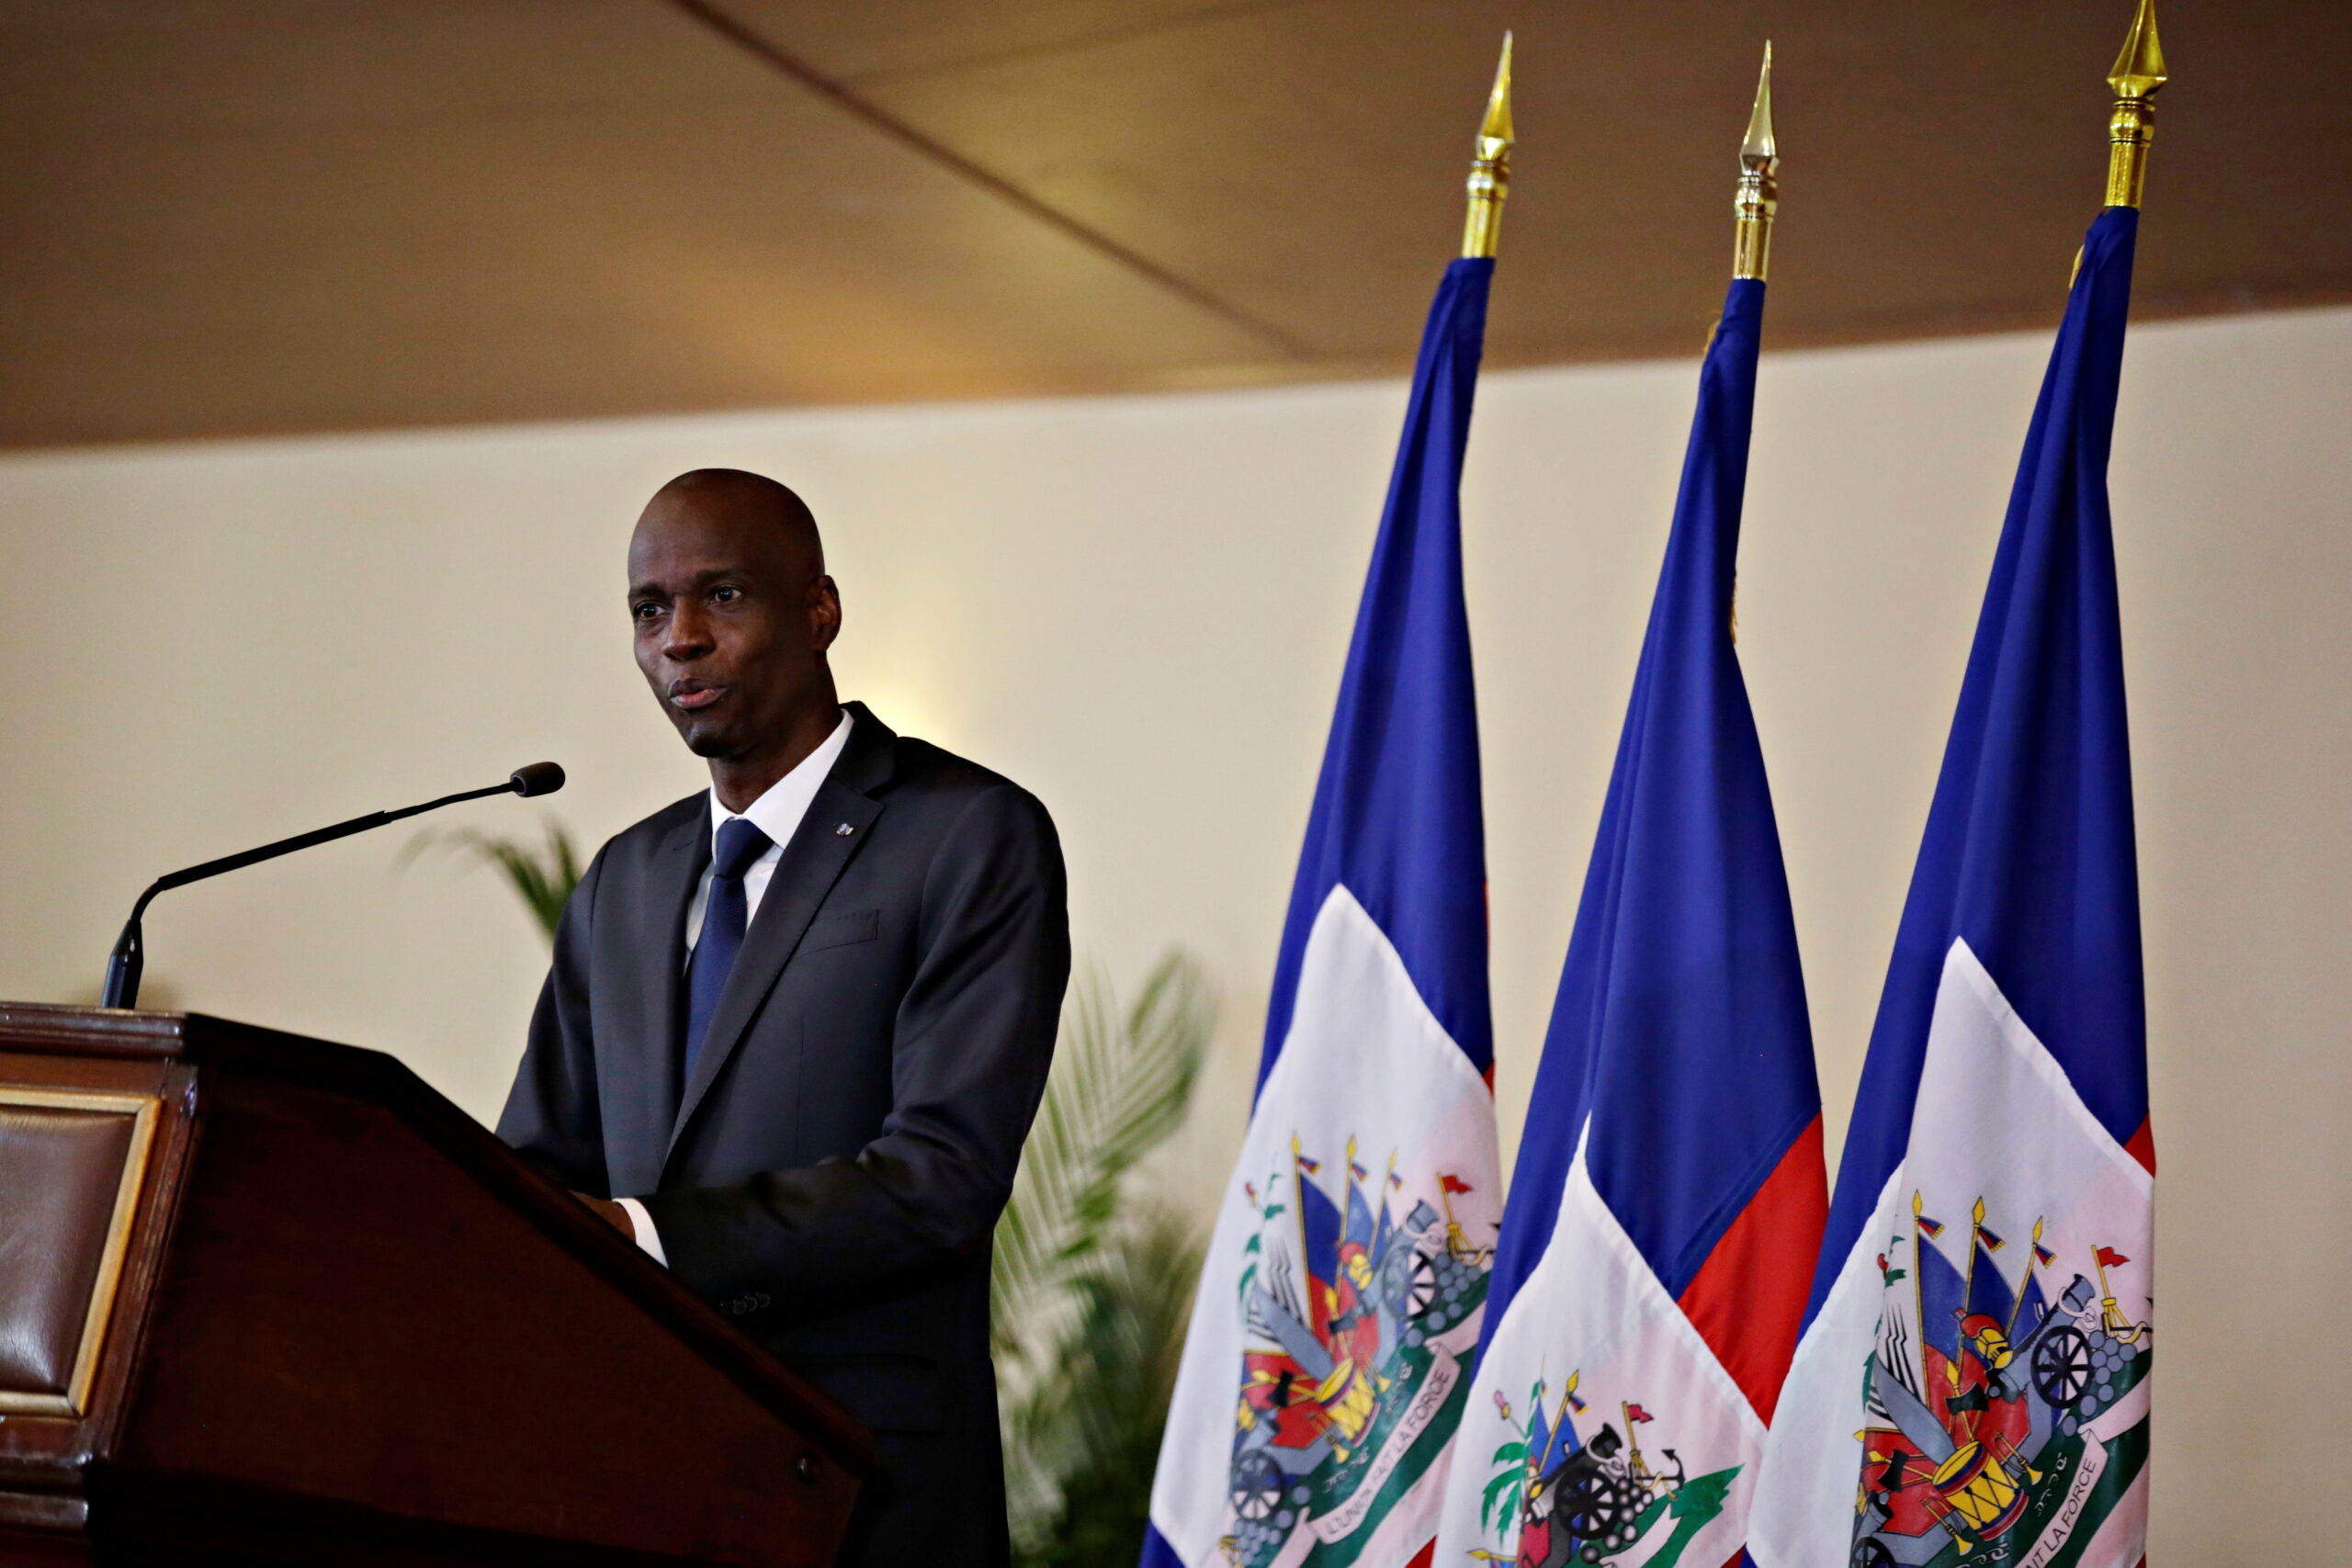 “โฌเวแนล โมอิส” ผู้นำเฮติ ถูกลอบสังหารเสียชีวิตคาบ้านพัก – ต่างประเทศ